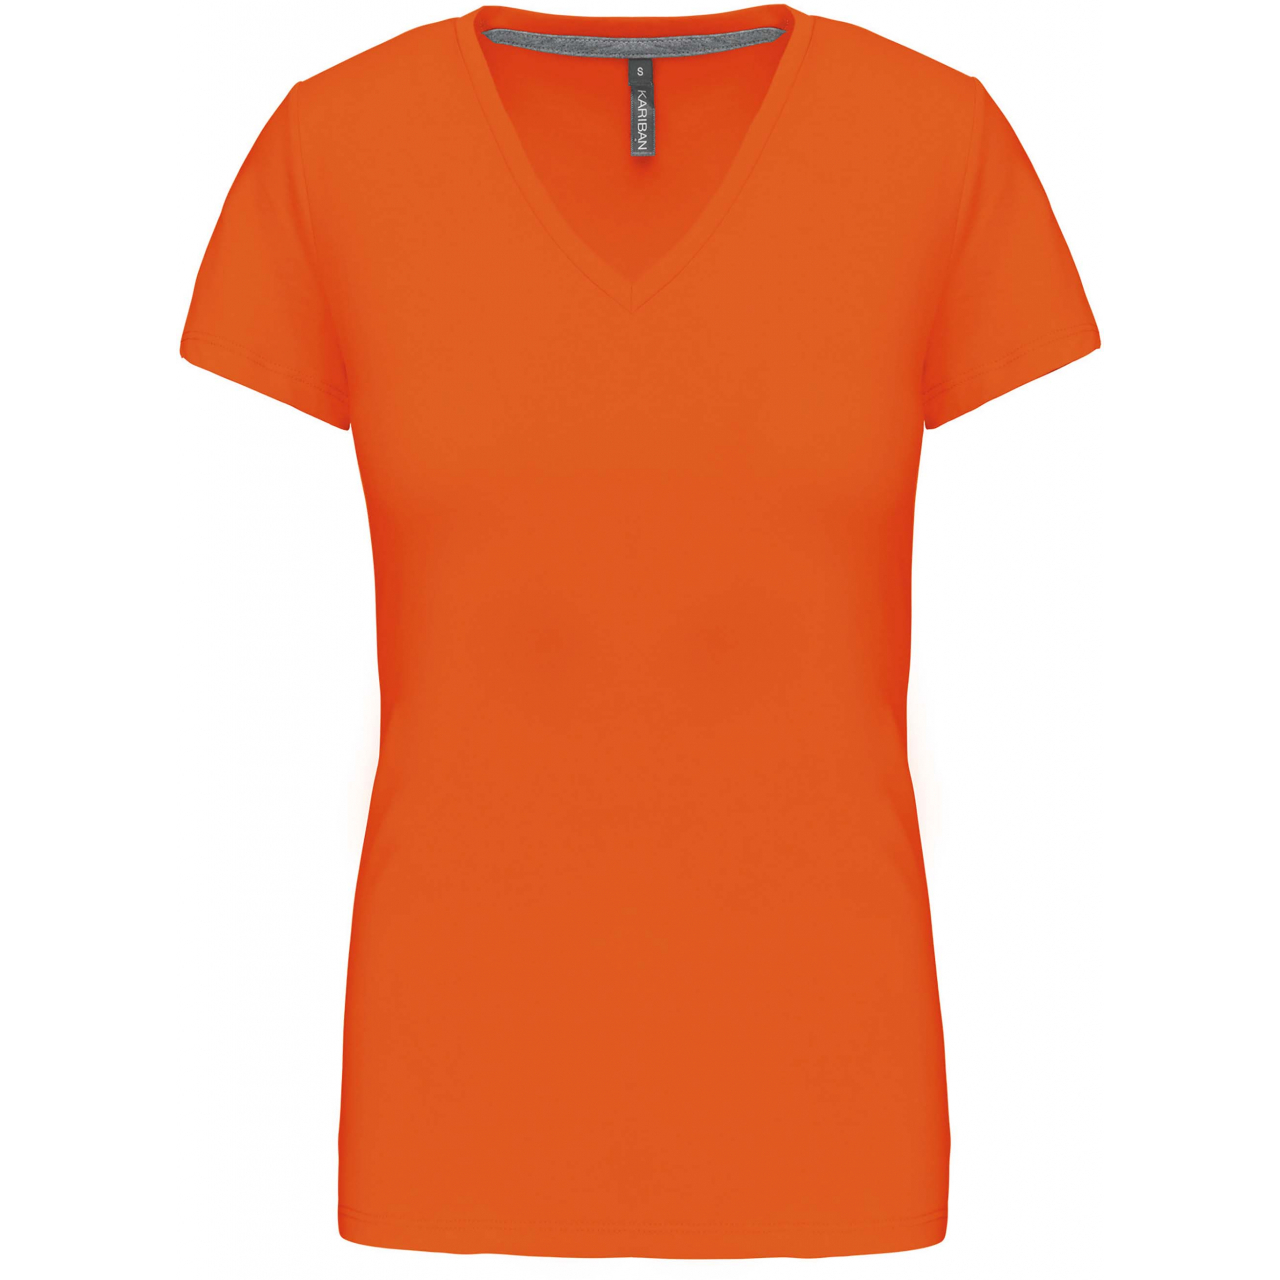 Dámské tričko Kariban V-neck s krátkým rukávem - oranžové, L